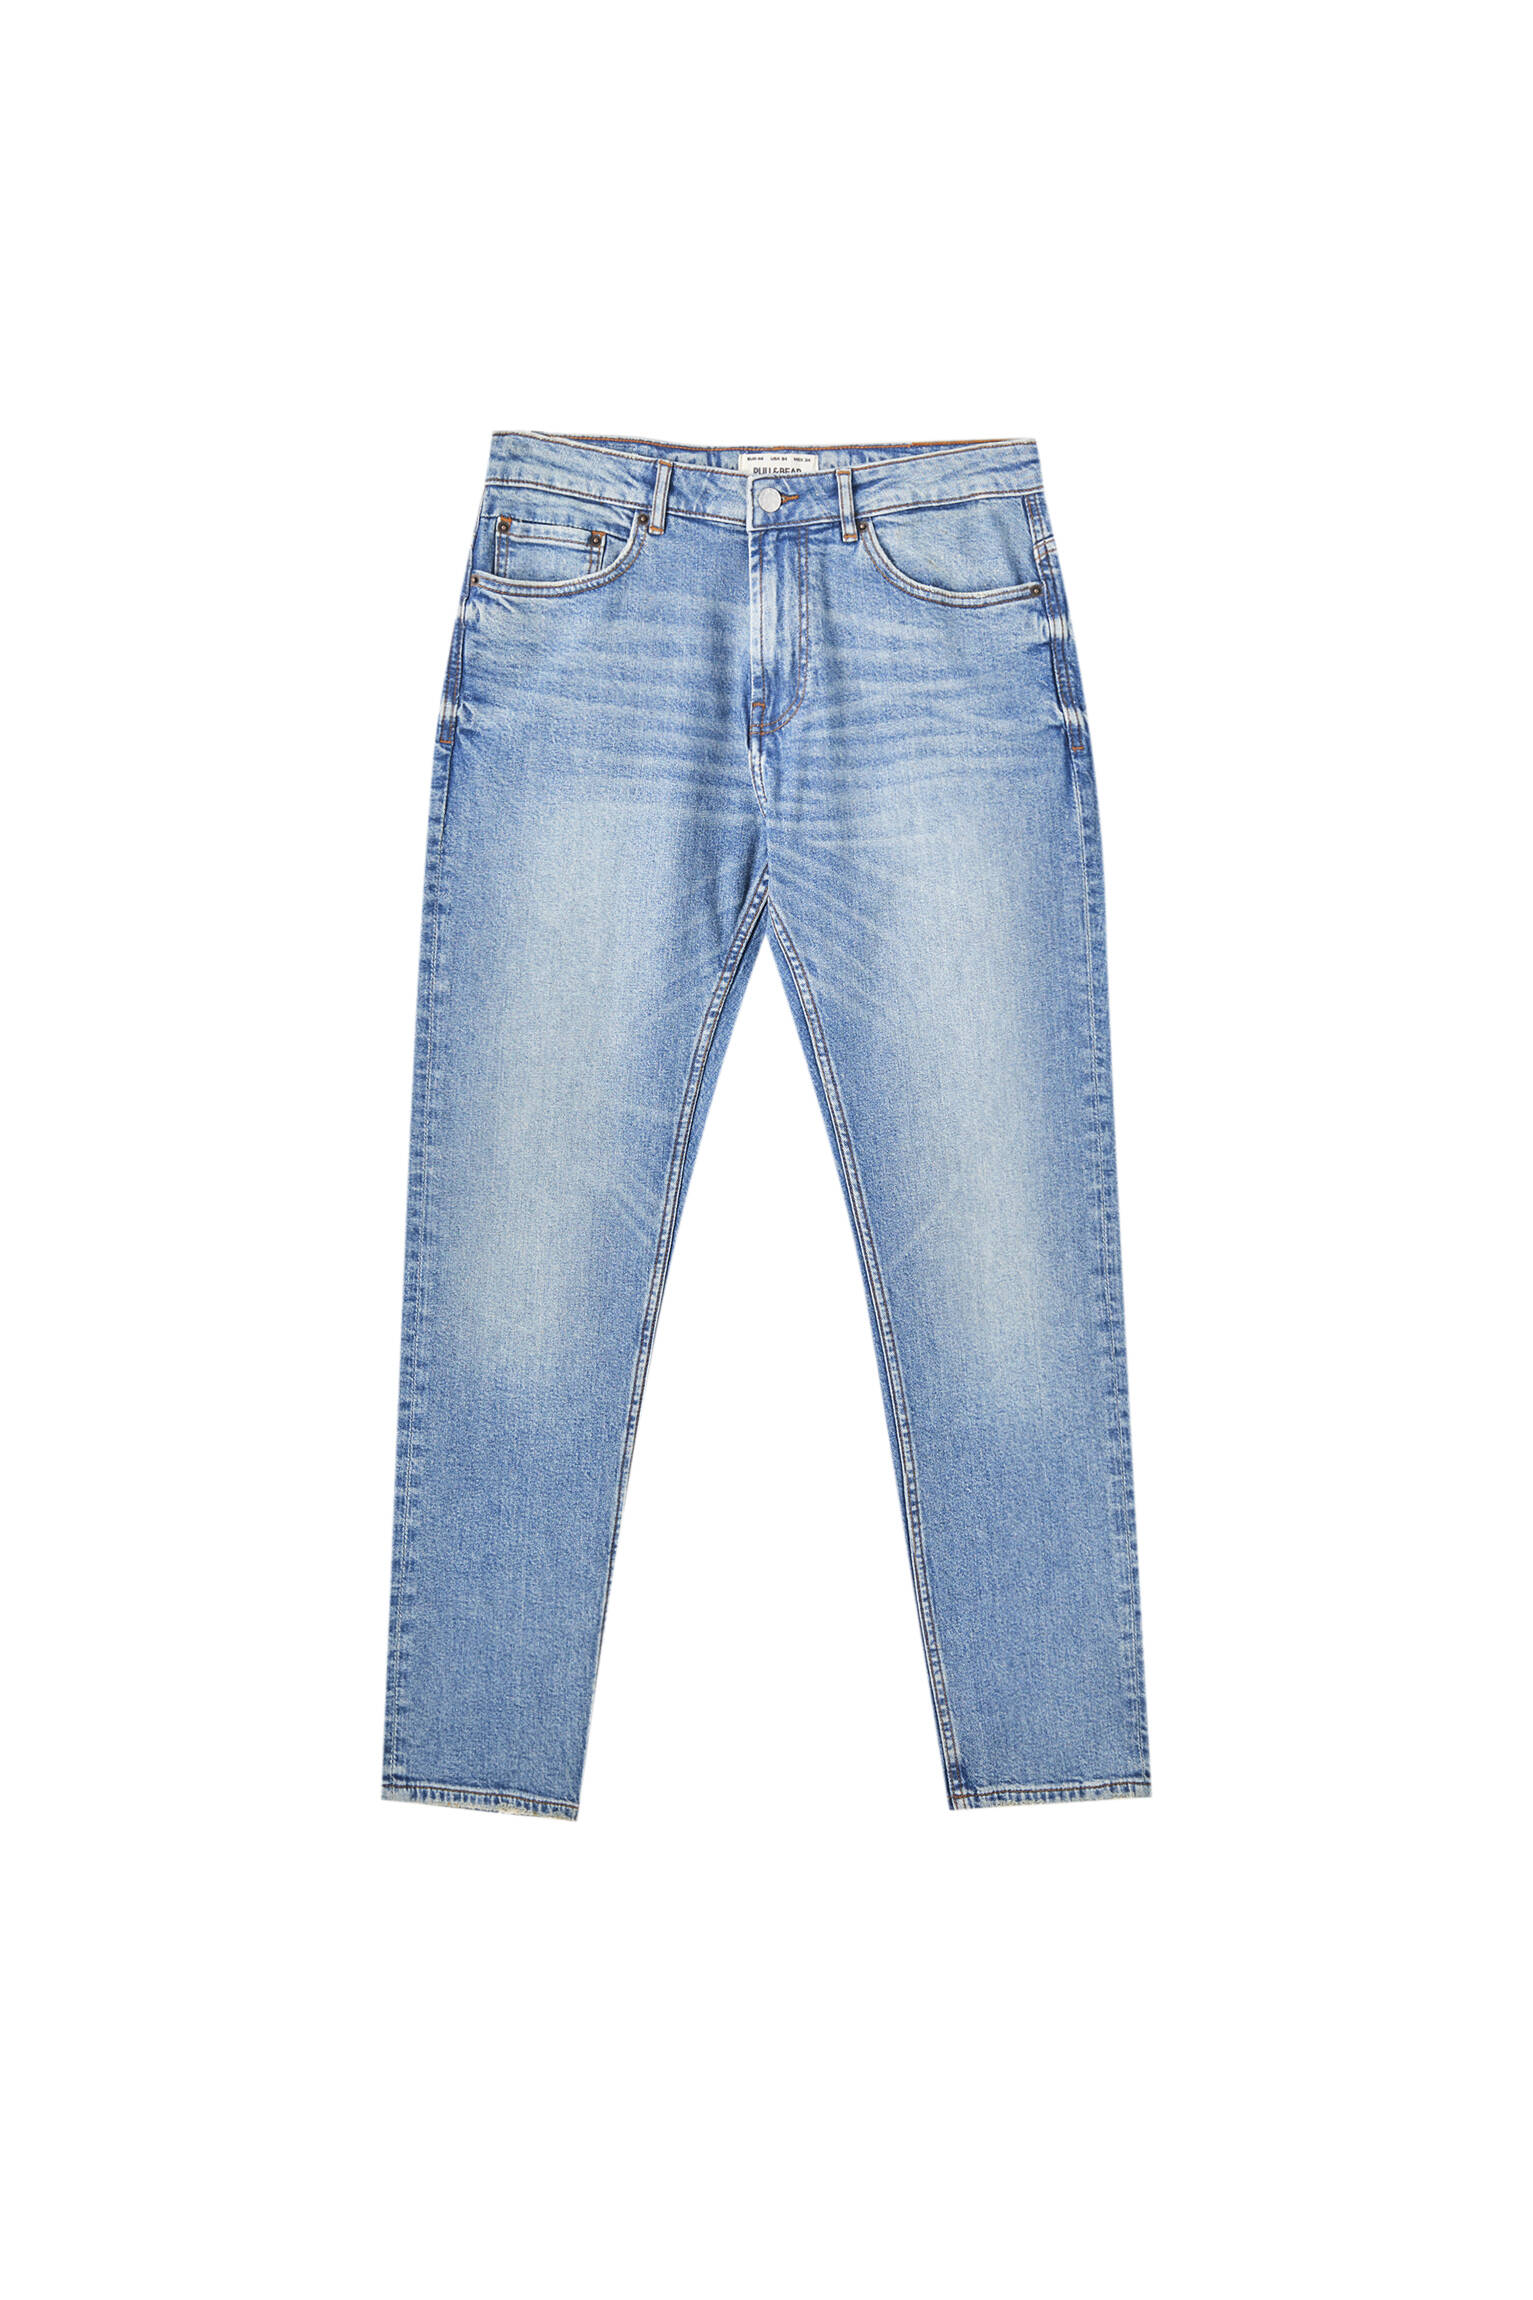 НЕОНОВО-СИНИЙ Зауженные джинсы выцветшего синего цвета Pull & Bear